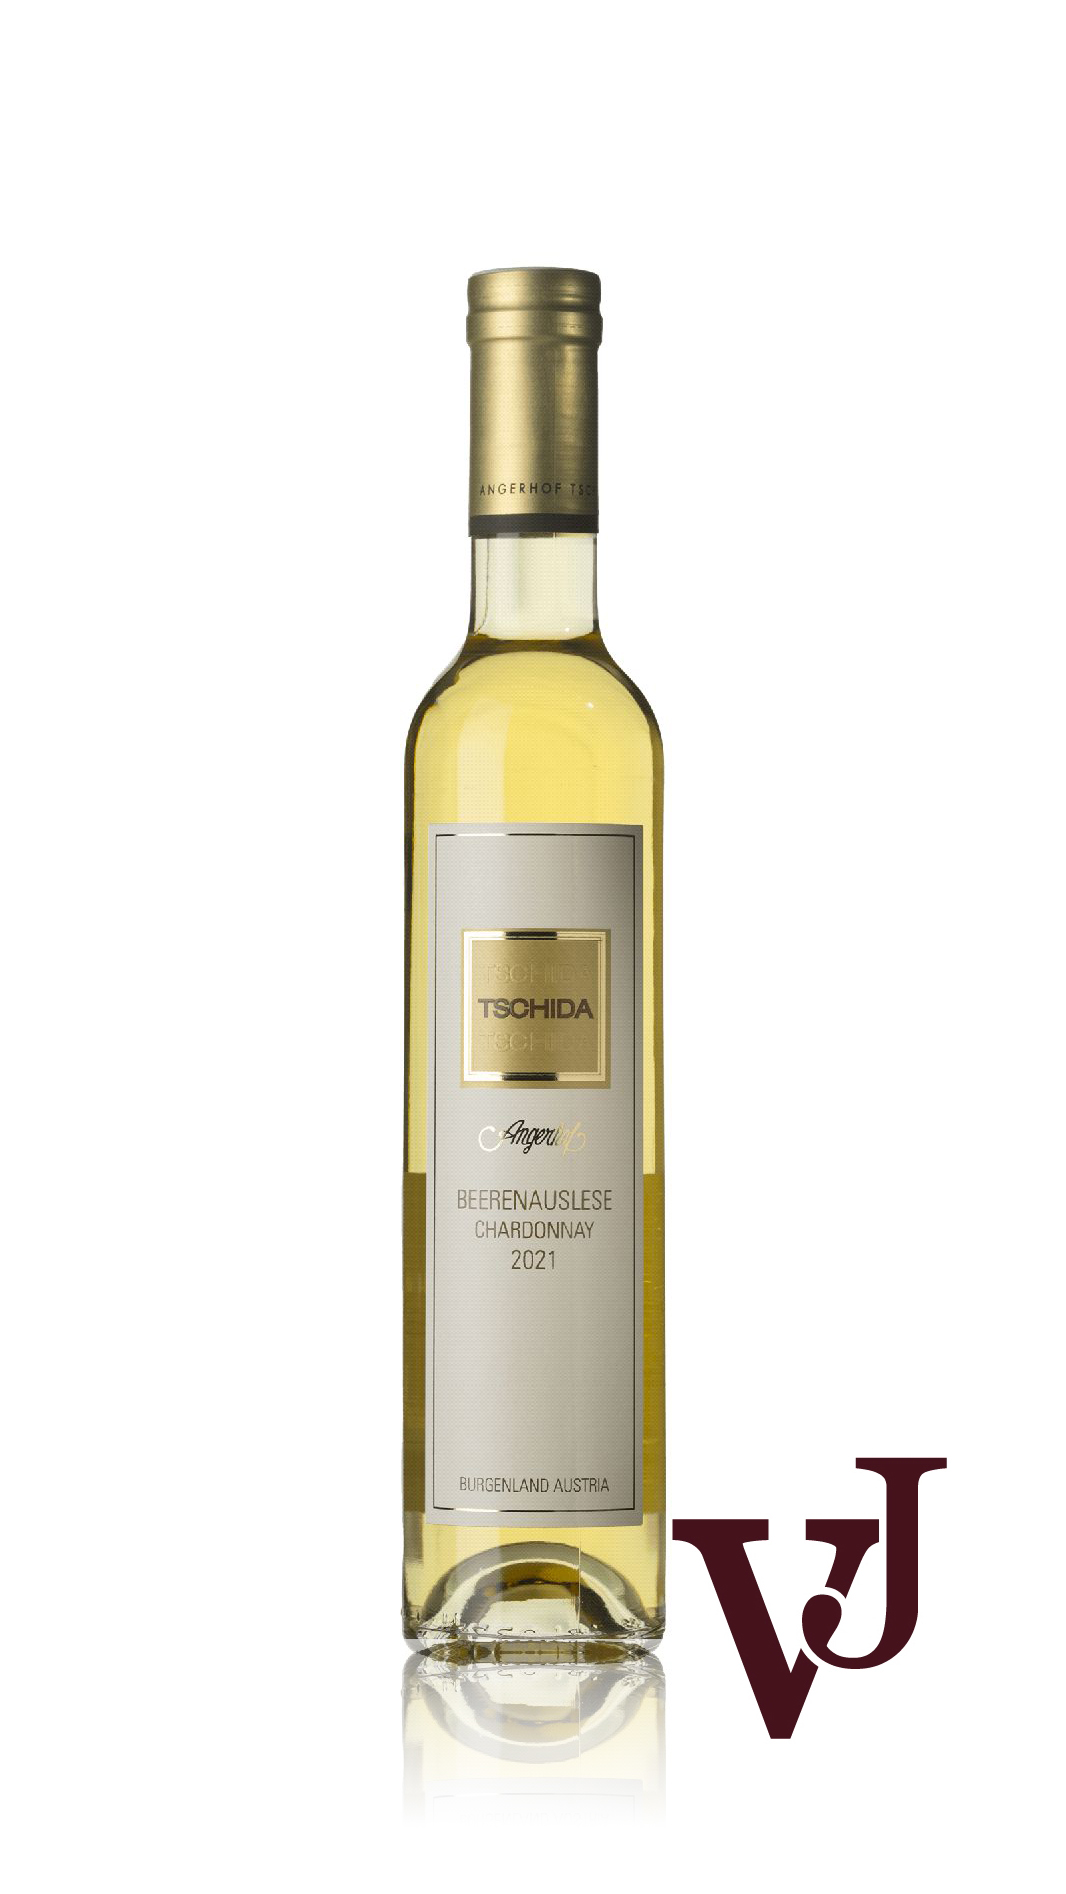 Vitt Vin - Tschida Chardonnay Beerenauslese 2021 artikel nummer 9481502 från producenten Hans Tschida från Österrike